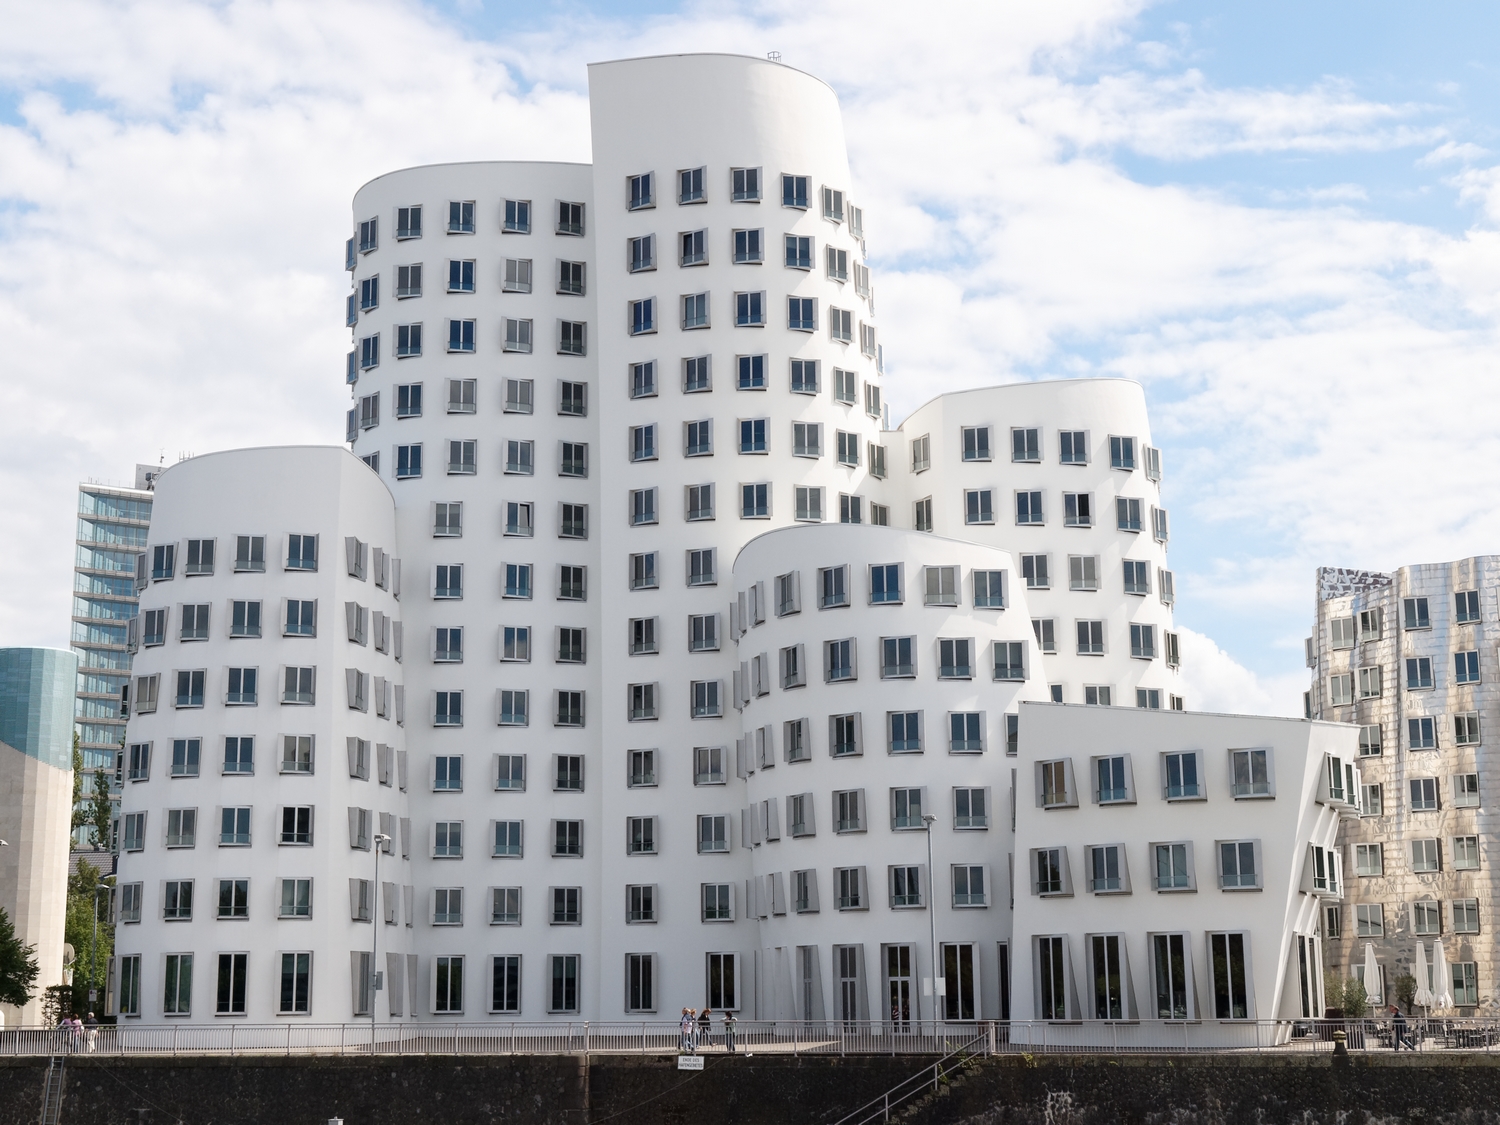 Medienhafen Düsseldorf Gehry-Bauten 2011